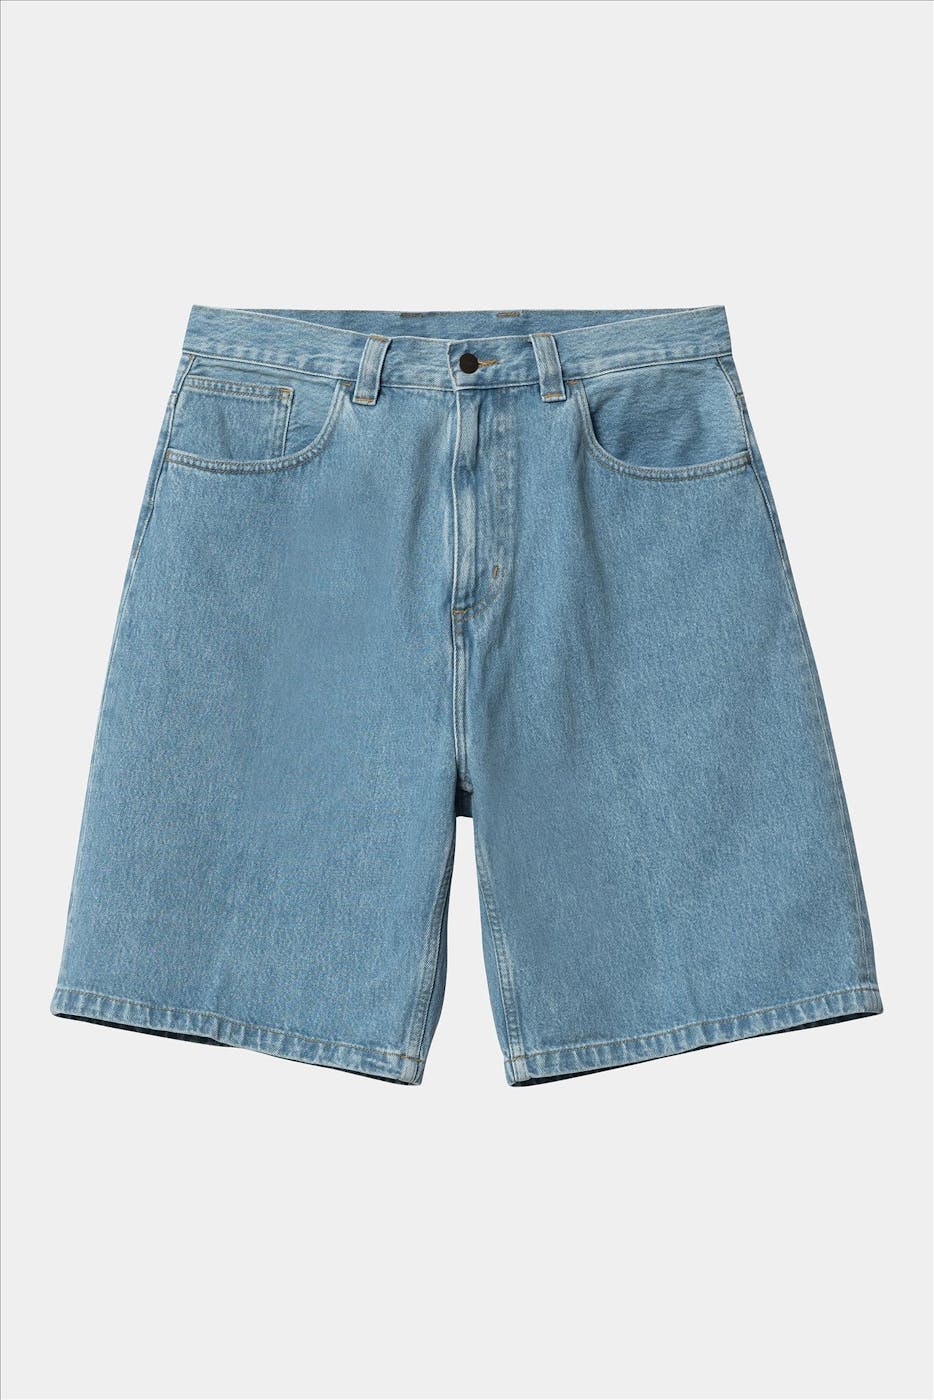 Carhartt WIP - Lichtblauwe Brandon jeansshort